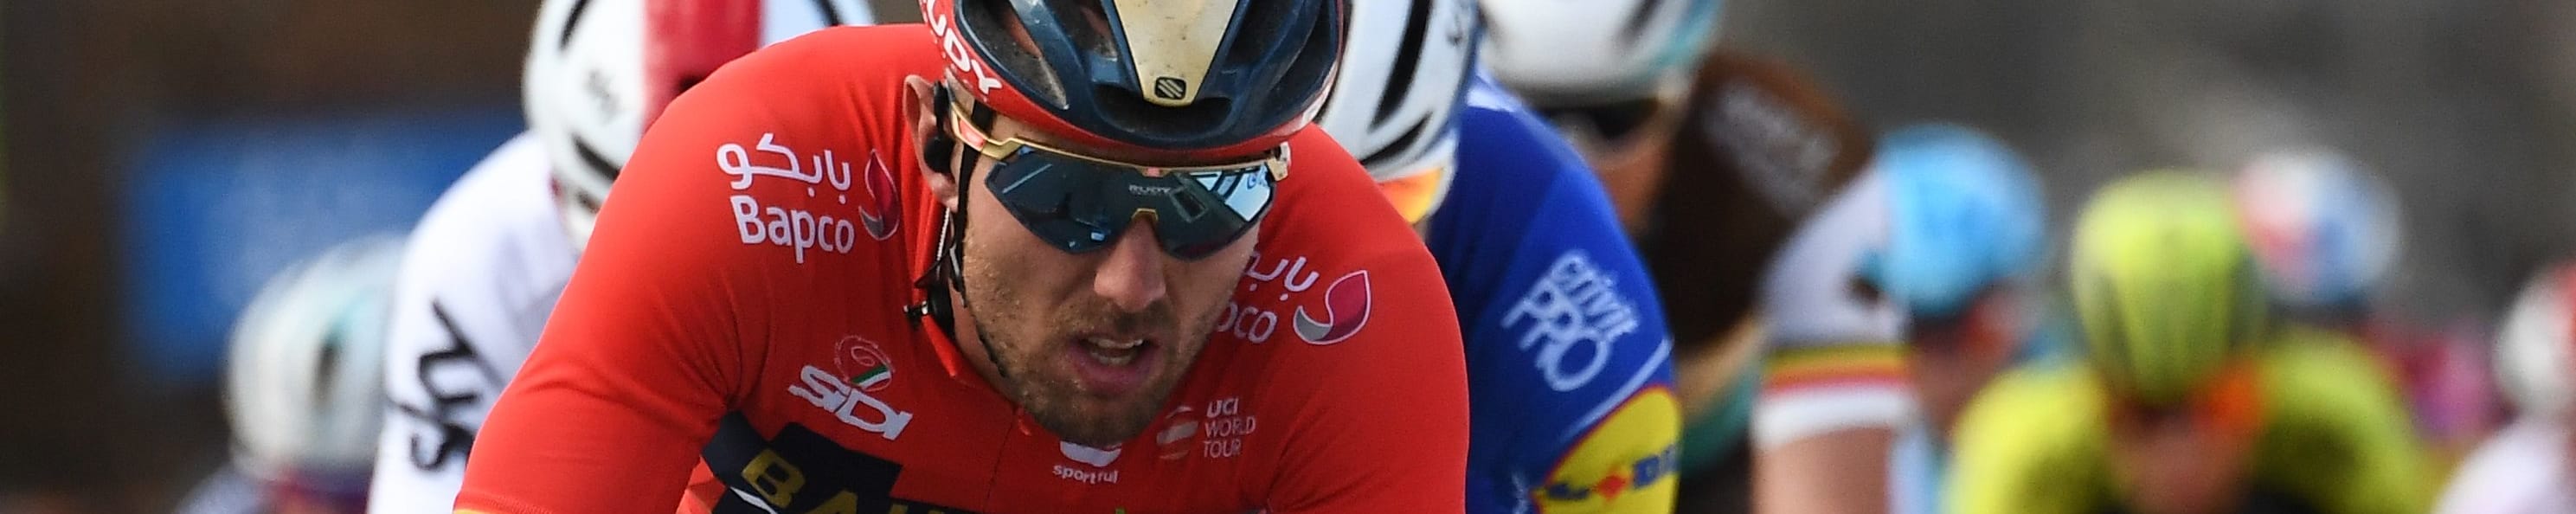 Tour de France 2019, tappa 3: Sagan e Alaphilippe i favoriti, Colbrelli speranza italiana